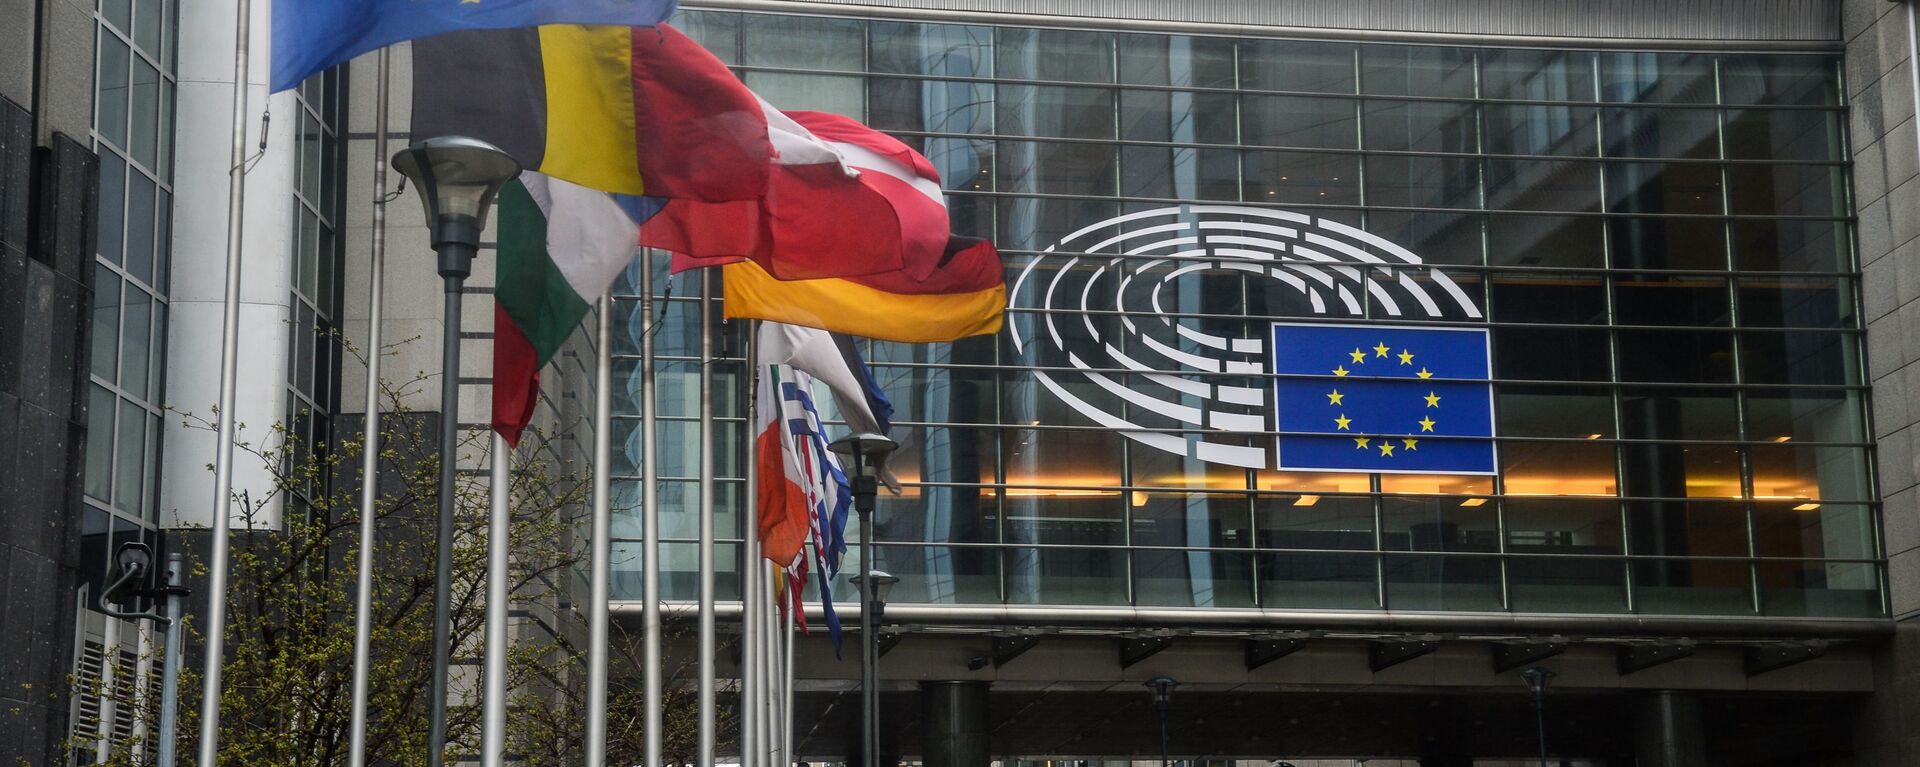 Sede del Parlamento Europeo en Estrasburgo - Sputnik Mundo, 1920, 16.12.2021